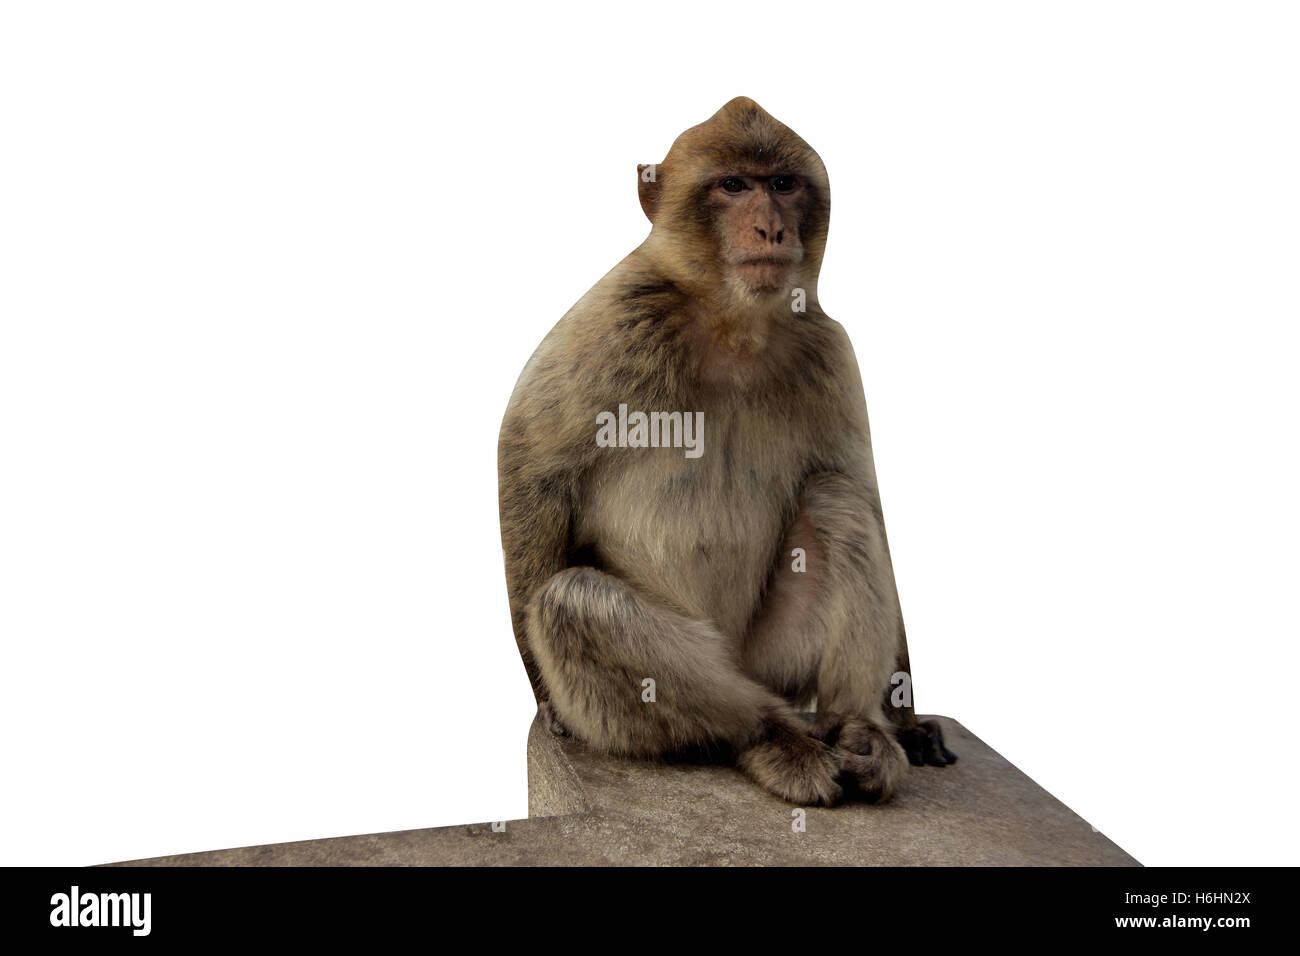 Barbary ape or macaque, Macaca sylvanus, single mammal in Gibralter Stock Photo